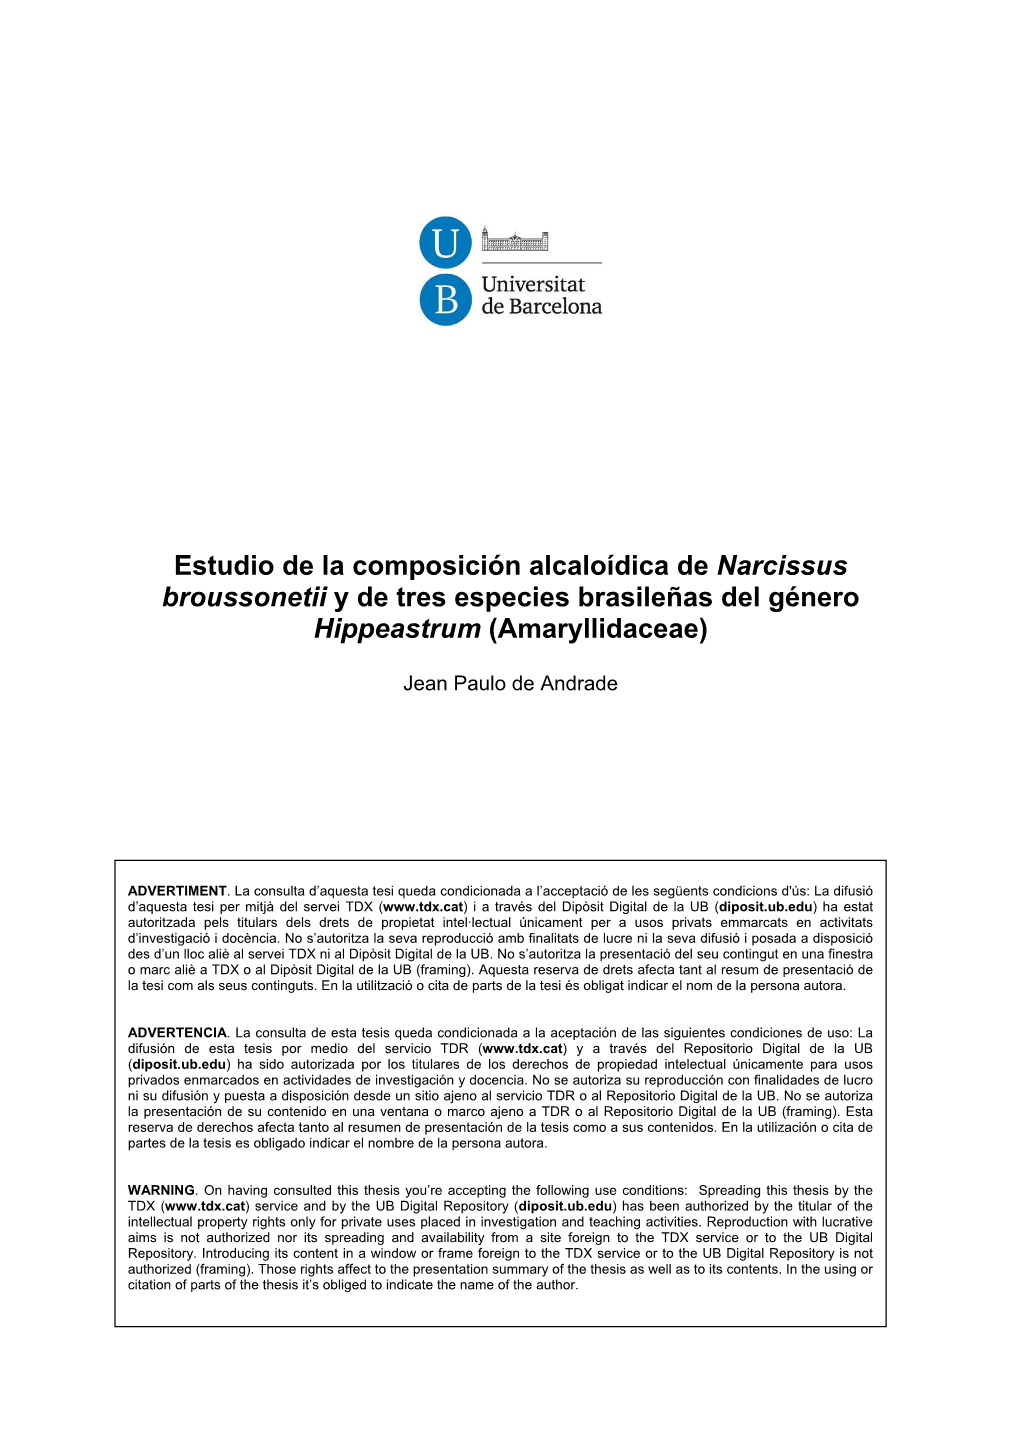 Estudio De La Composición Alcaloídica De Narcissus Broussonetii Y De Tres Especies Brasileñas Del Género Hippeastrum (Amaryllidaceae)